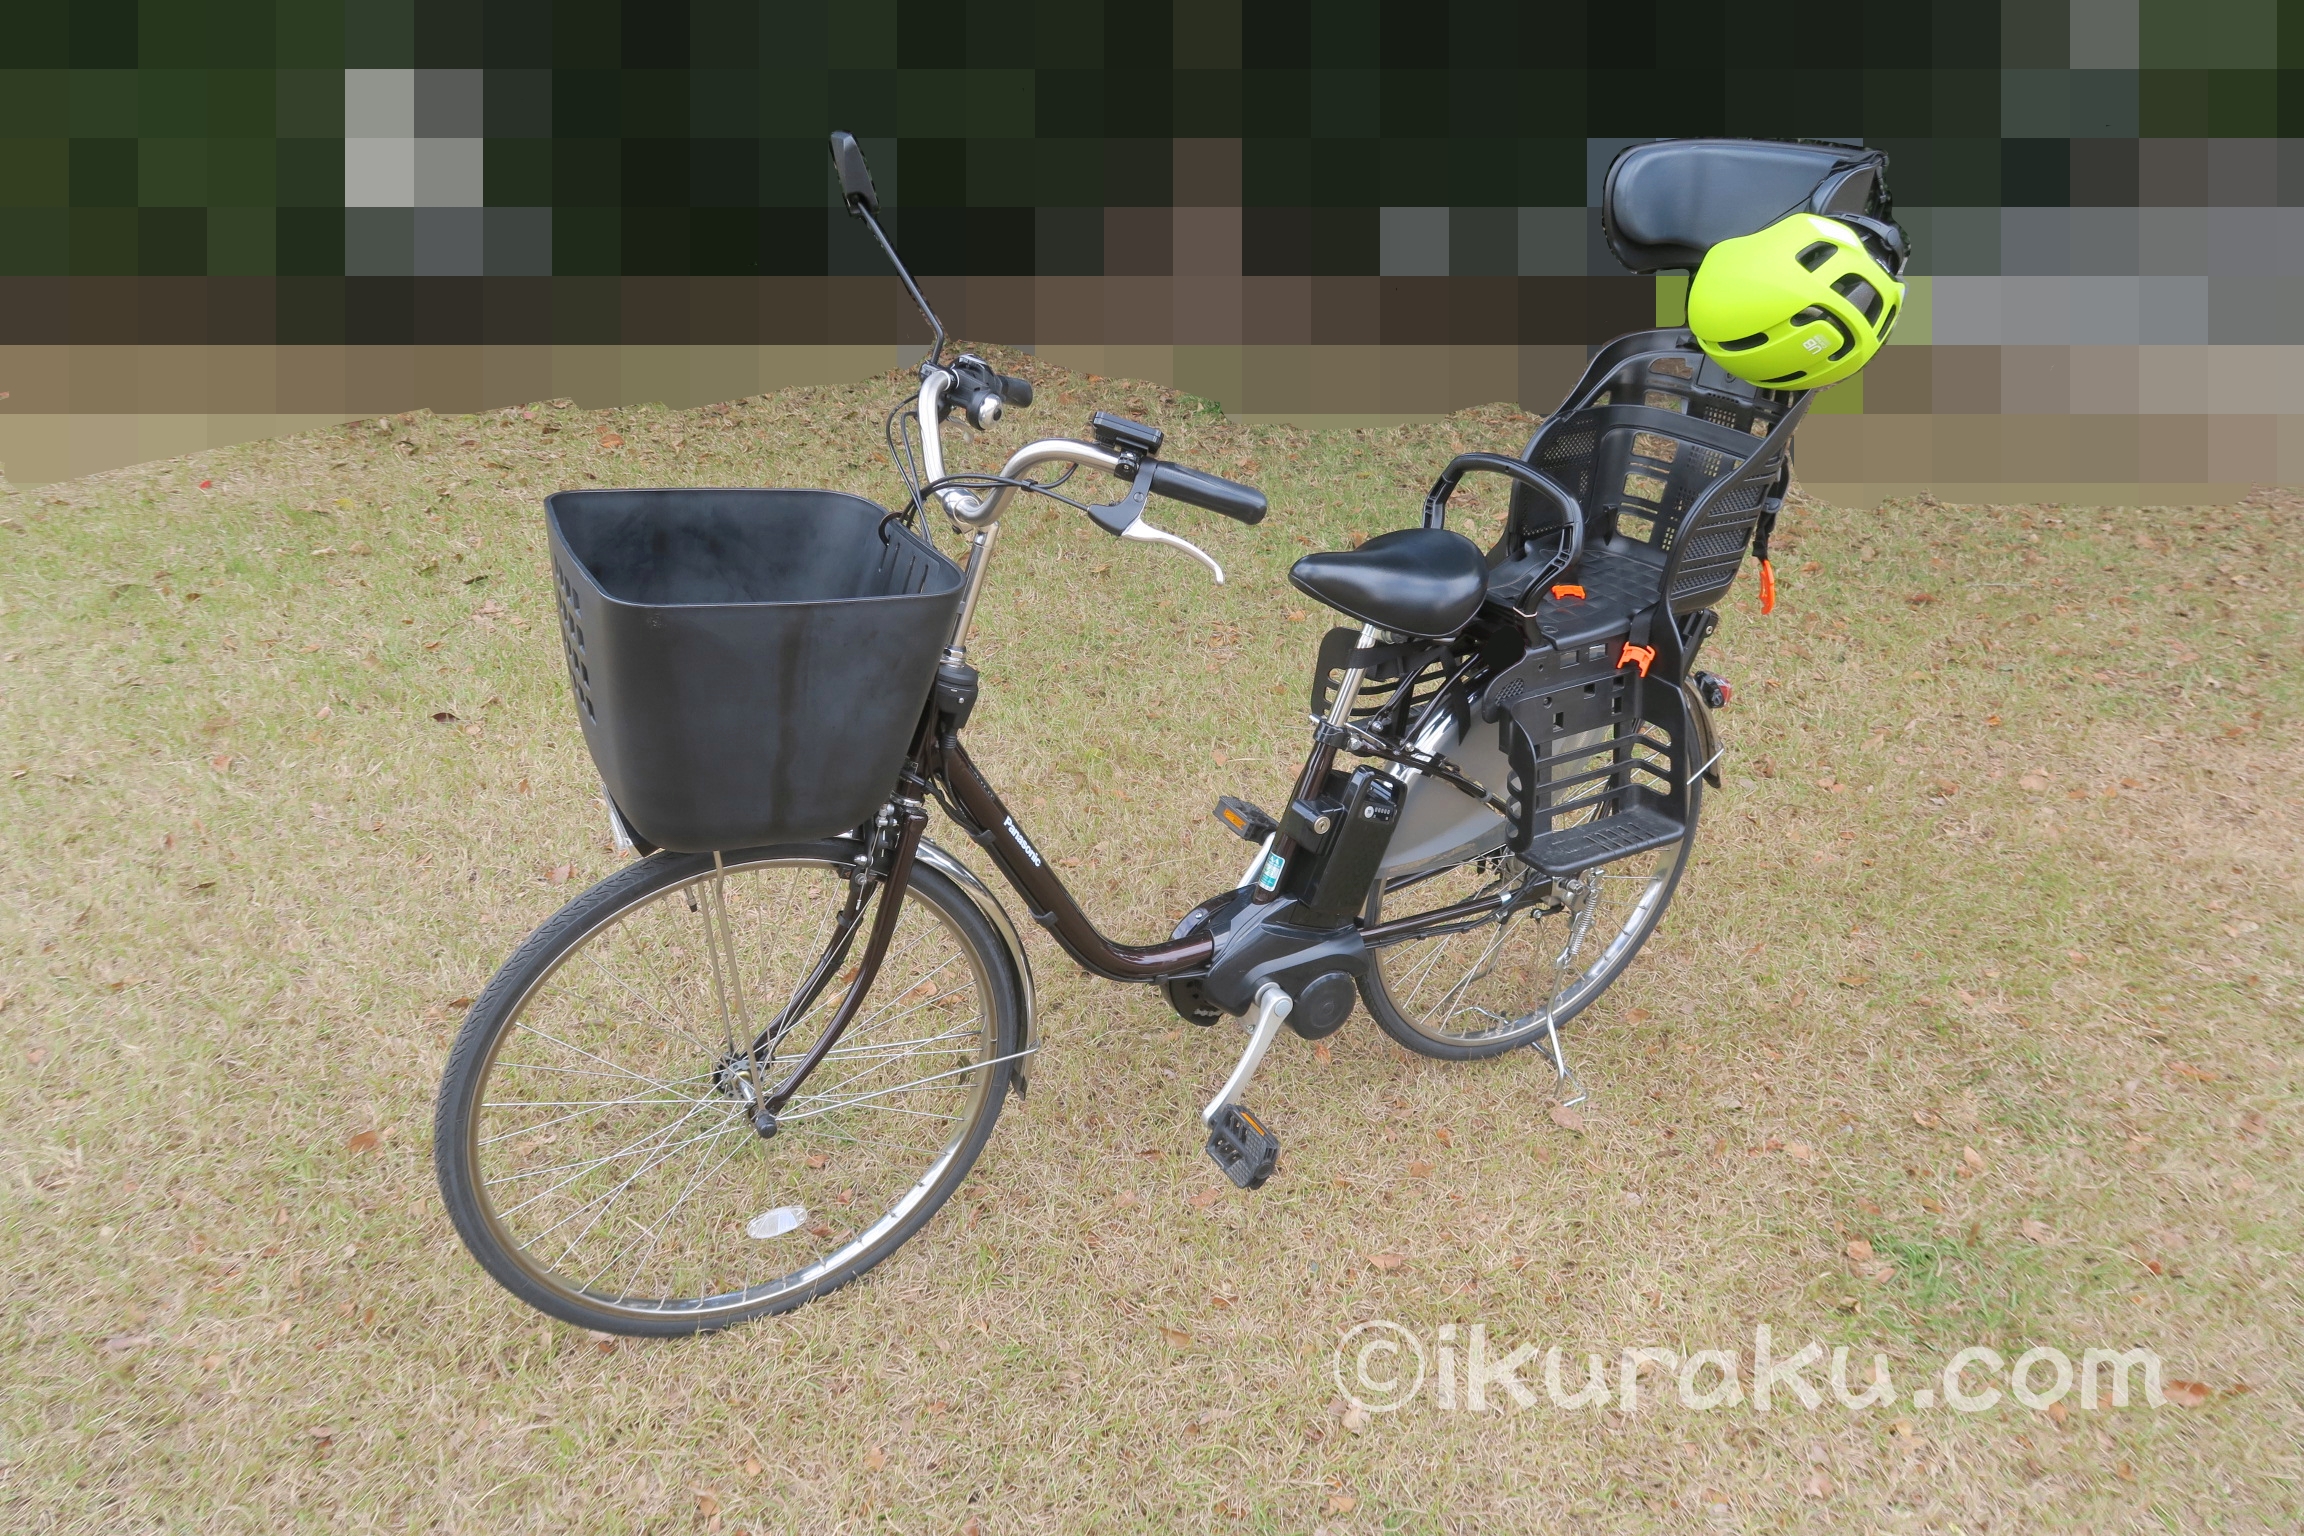 パナソニックの電動自転車とOGKカブトキャンバスアーバンのヘルメット